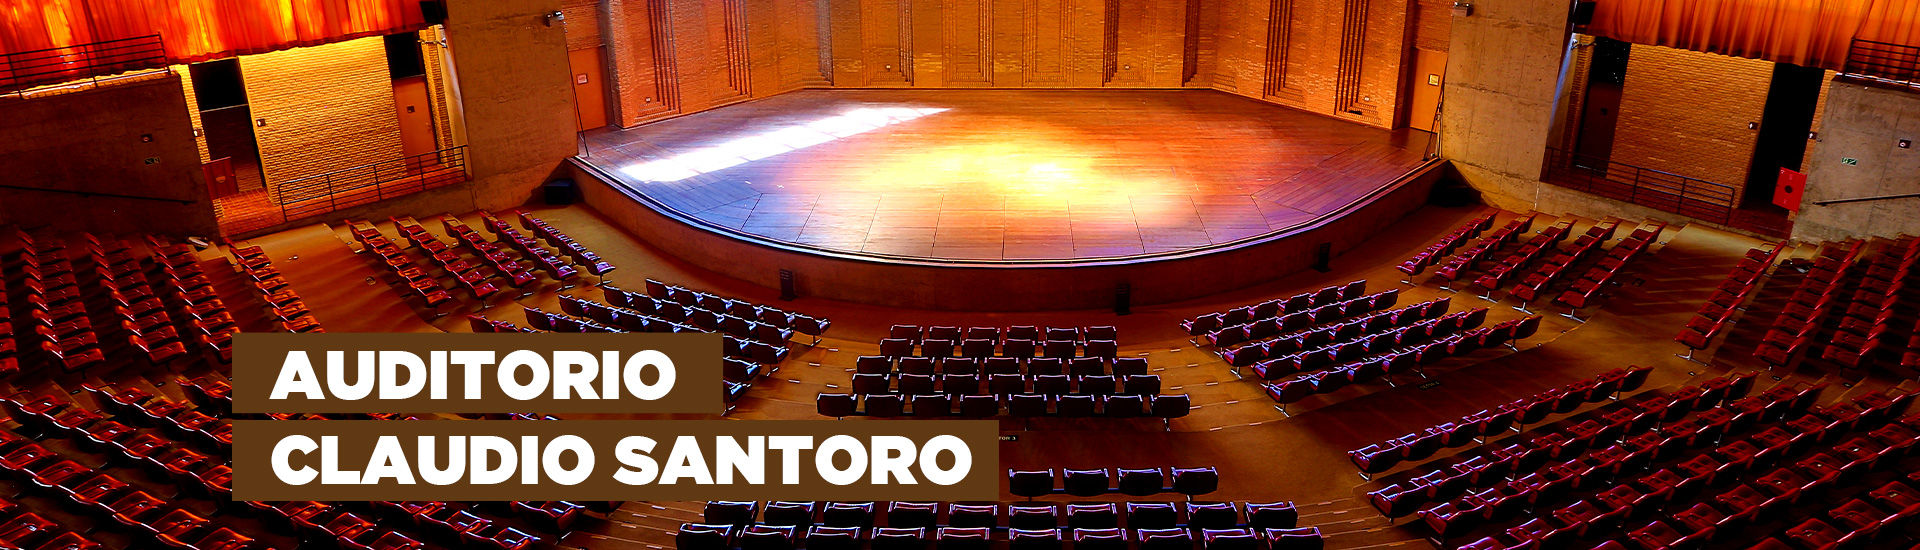 A imagem mostra o Auditório Claudio Santoro que possui uma arquitetura que se assemelha a arena. Há 814 poltronas na cor vermelha, um palco com luzes e vidraças nas quais é possível observar a natureza. Na imagem está escrito "Auditorio Claudio Santoro"